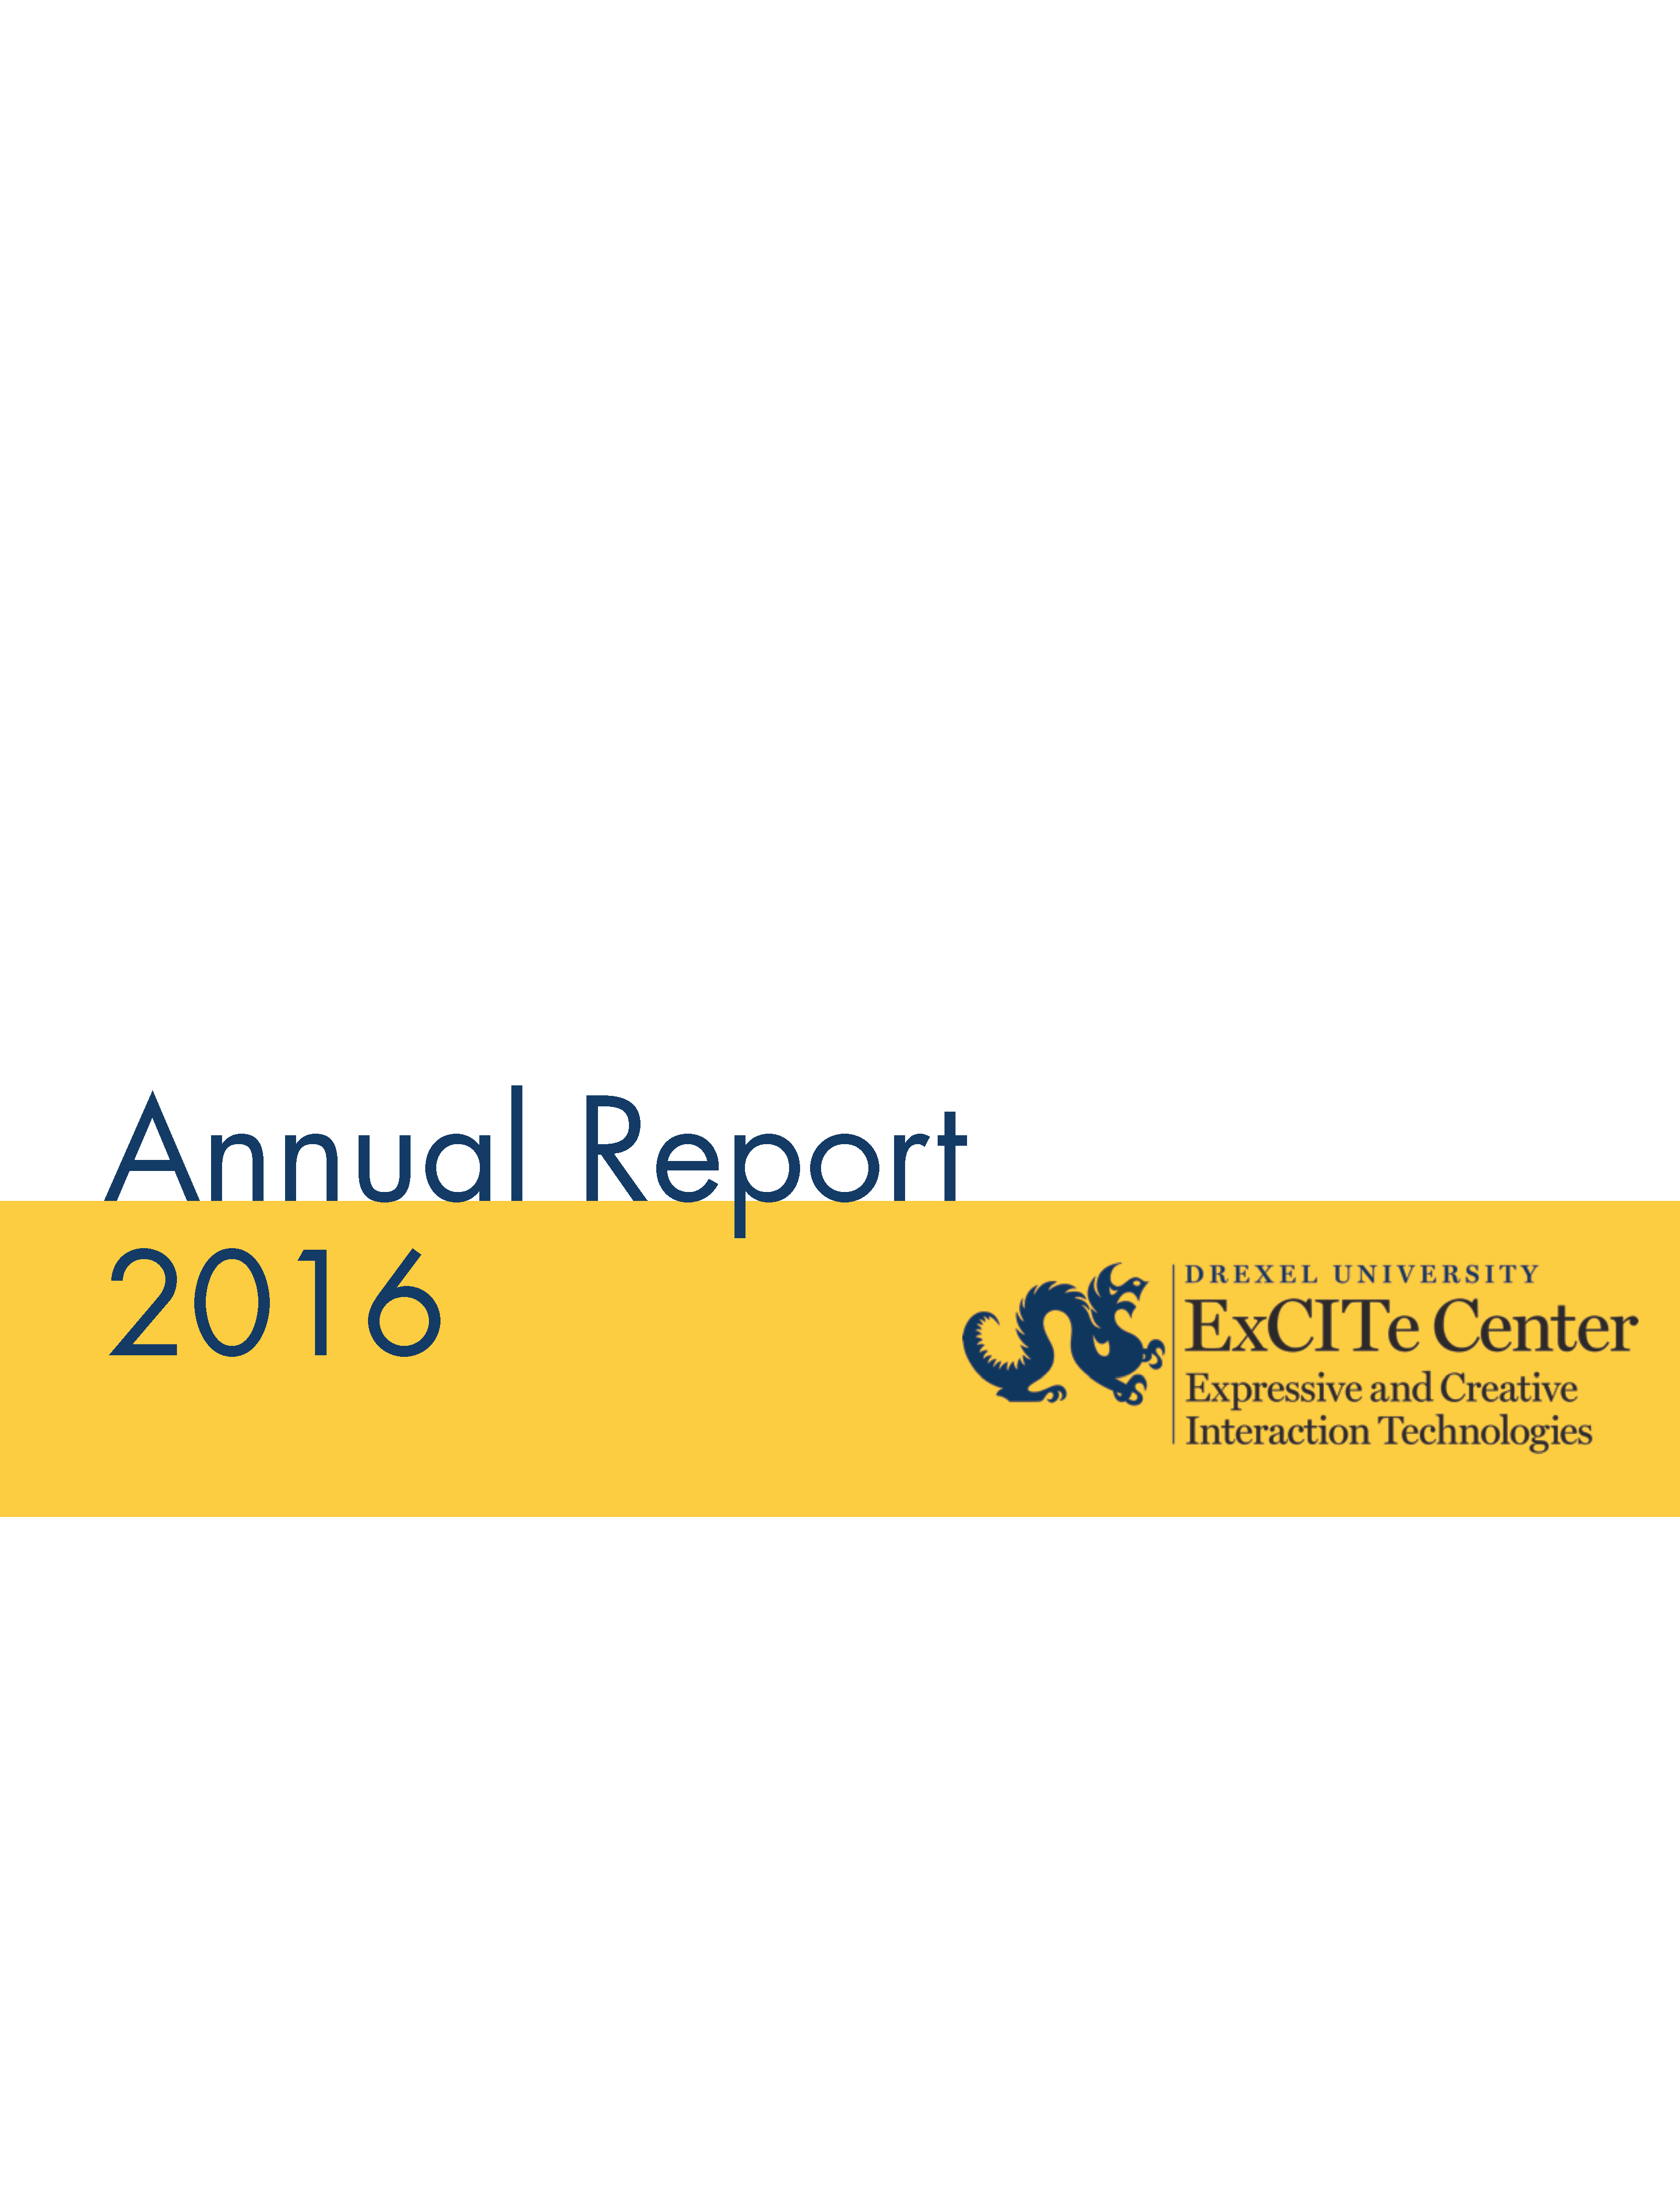 excite annual report 2016